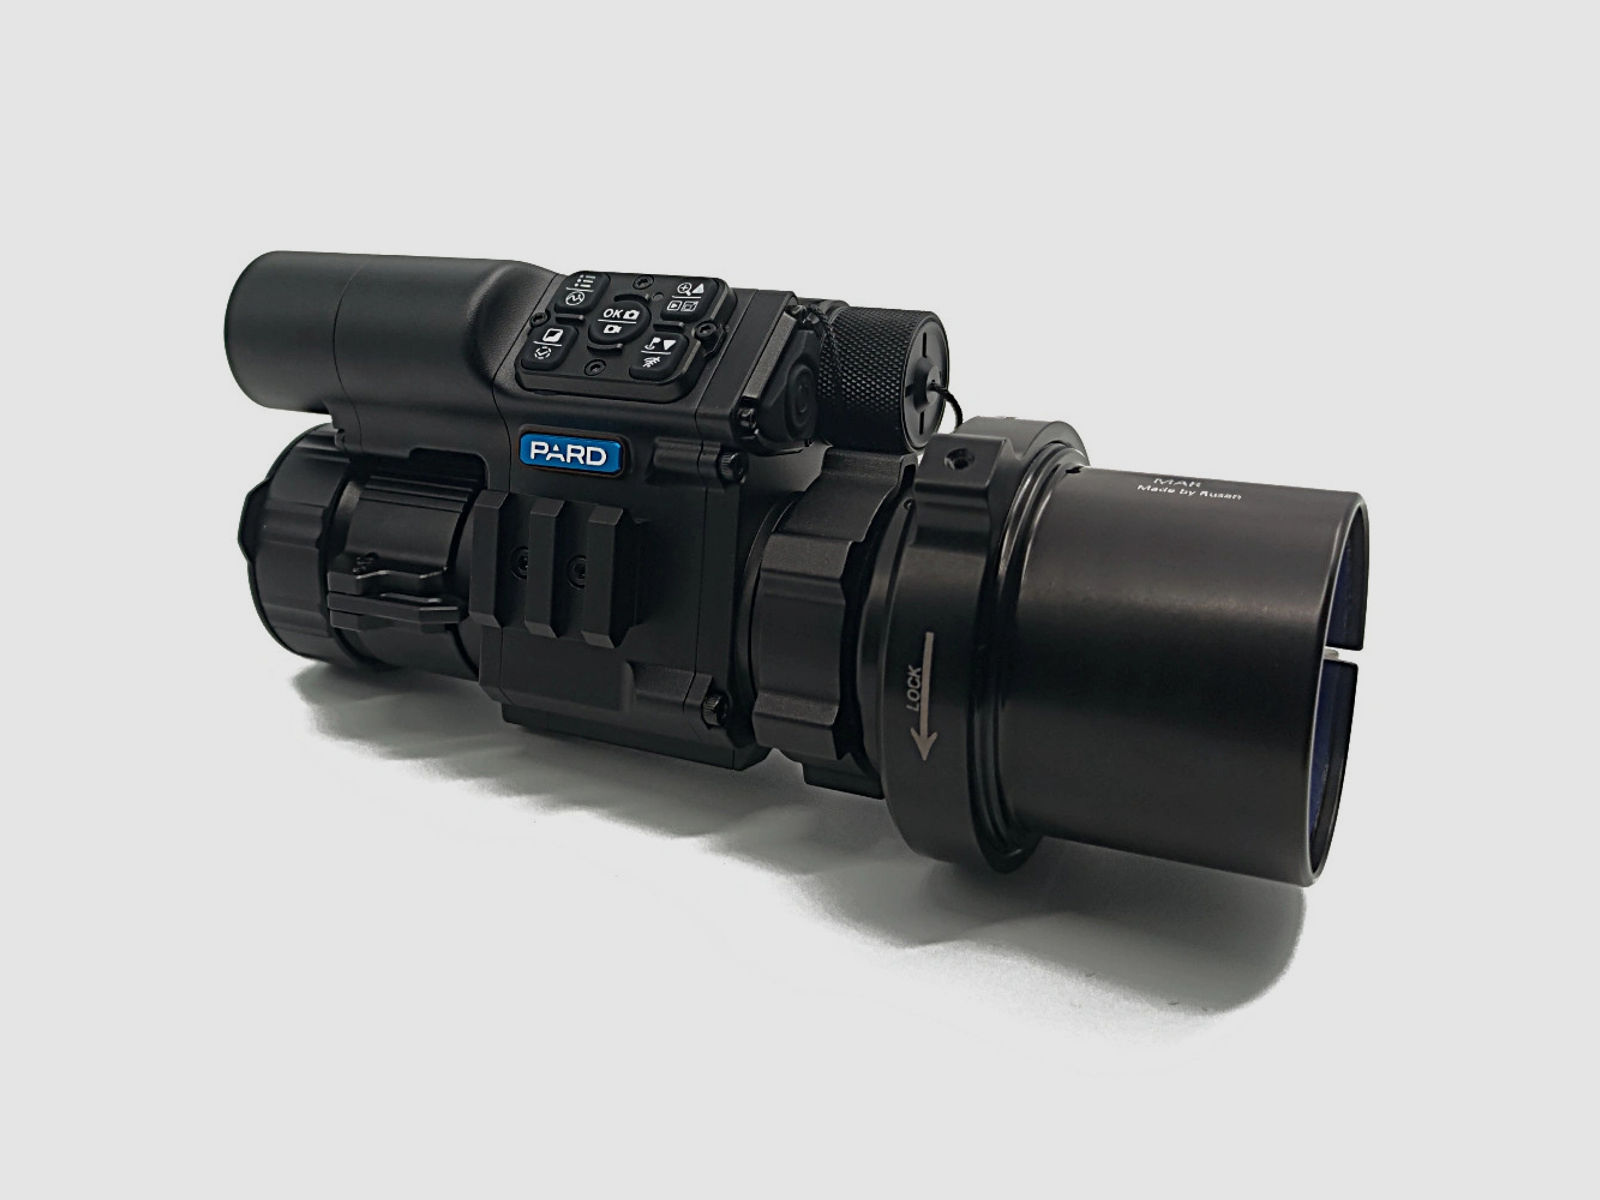 PARD FD1 Nachtsicht 3 in 1 Vorsatz, Monokular & Zielfernrohr - 940 nm mit LRF 44 mm RUSAN MAR + RUSAN MCR